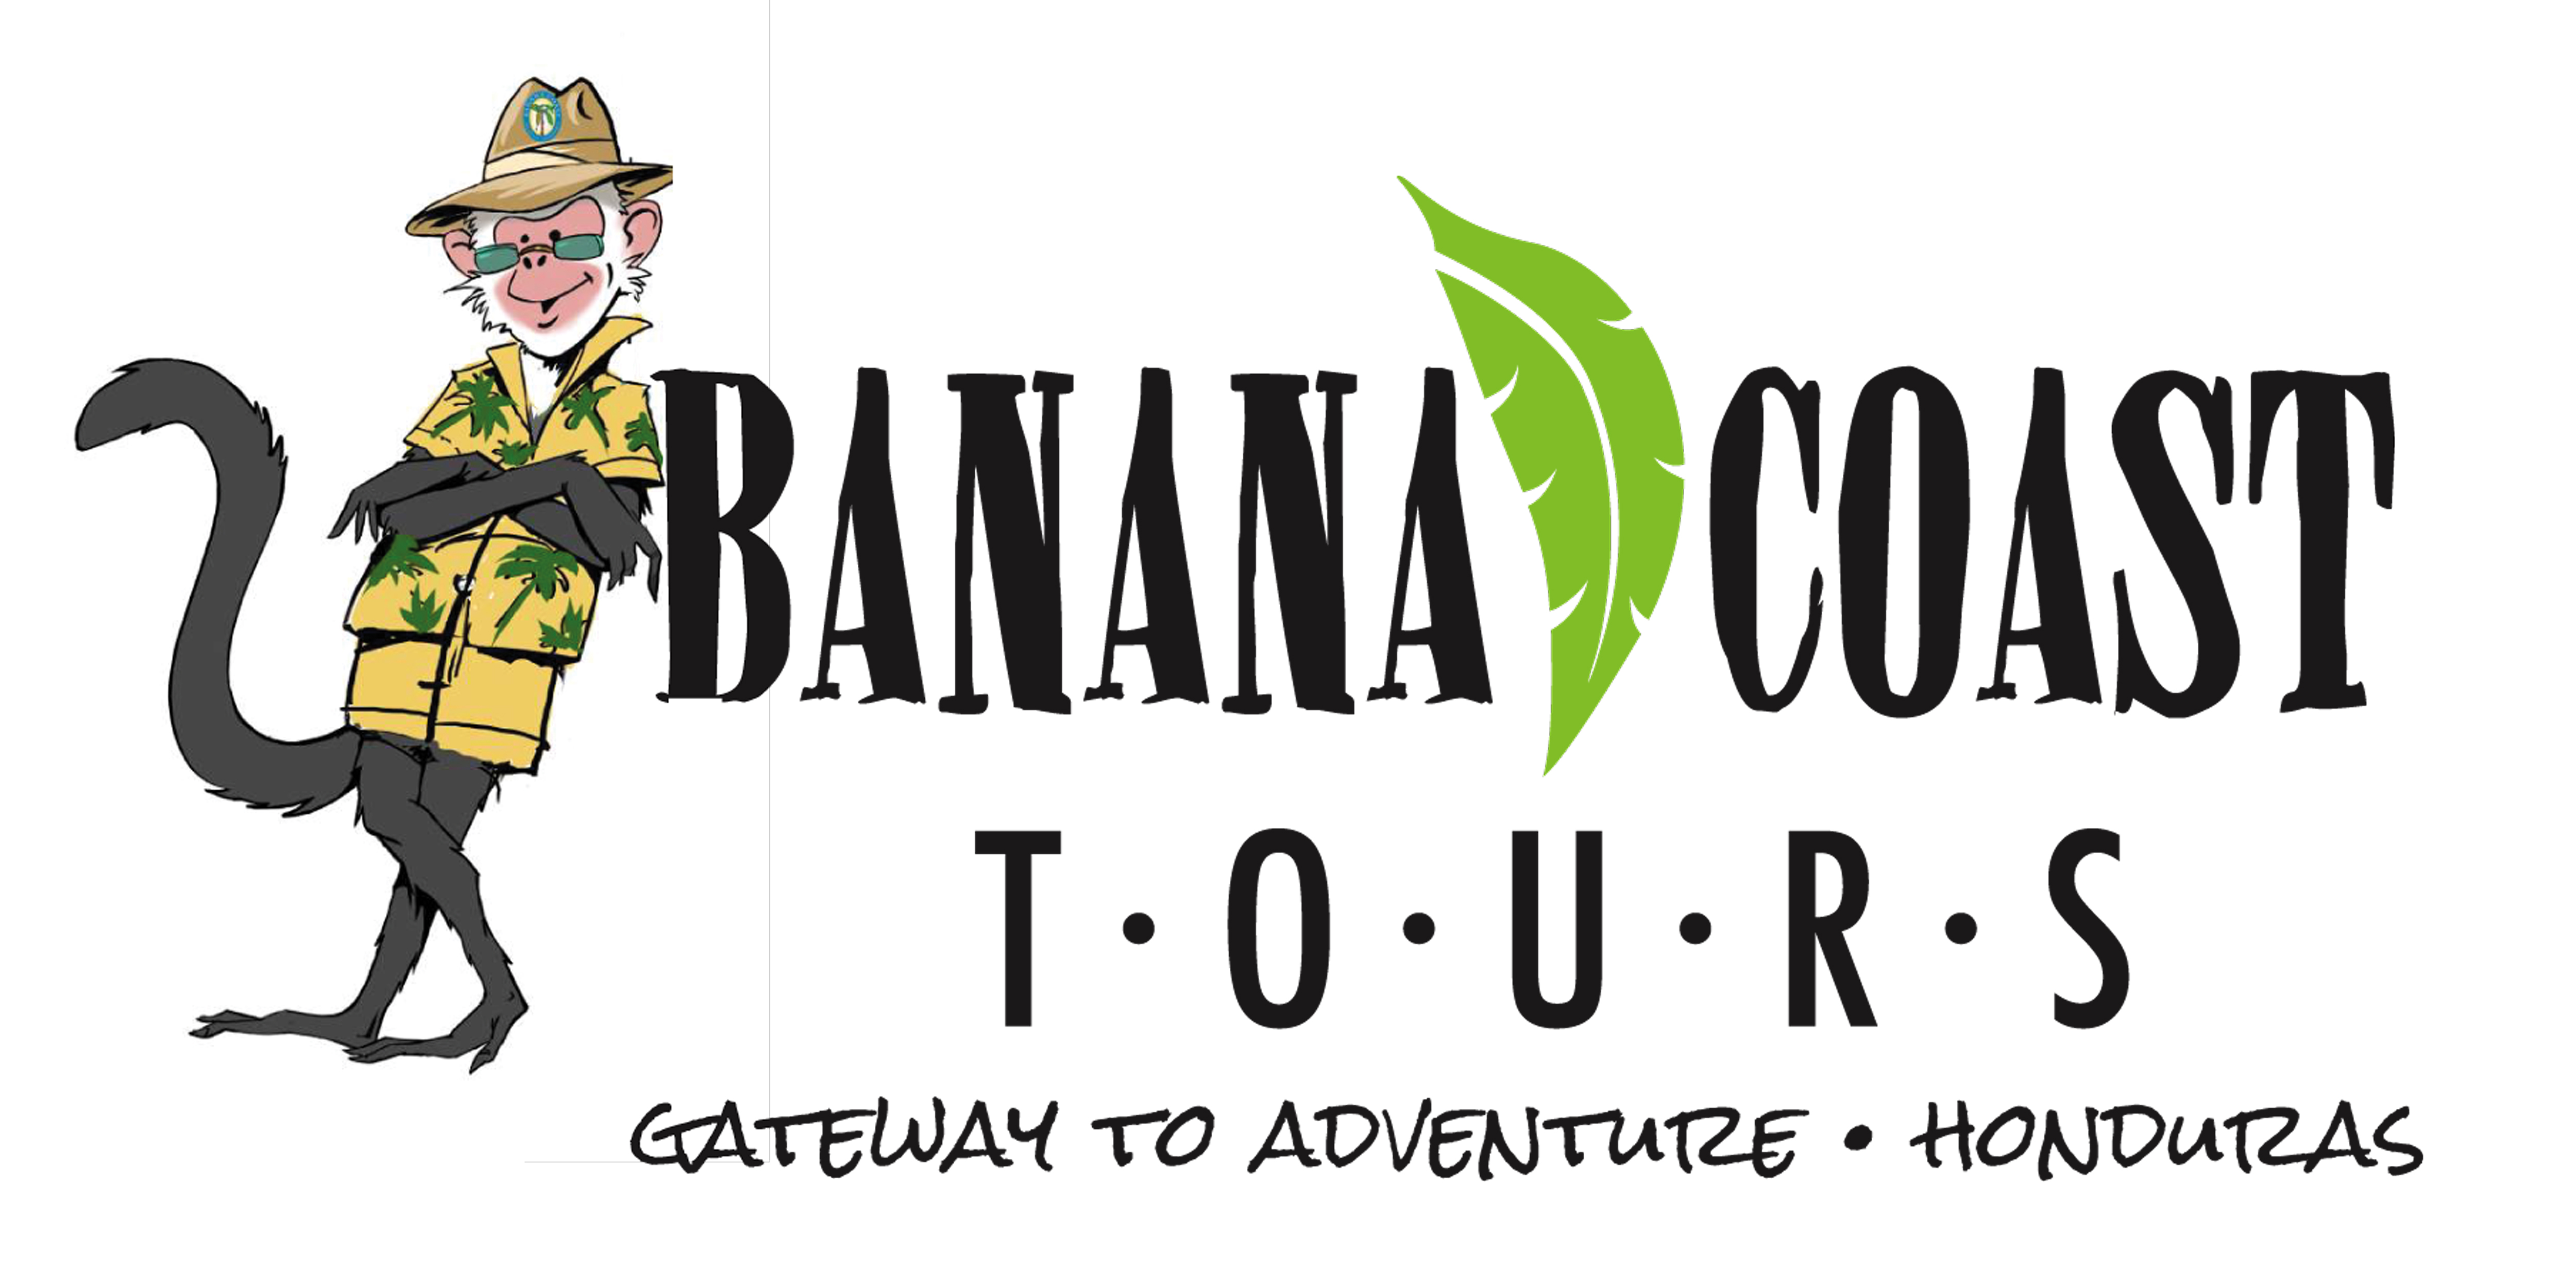 Banana Coast Tours